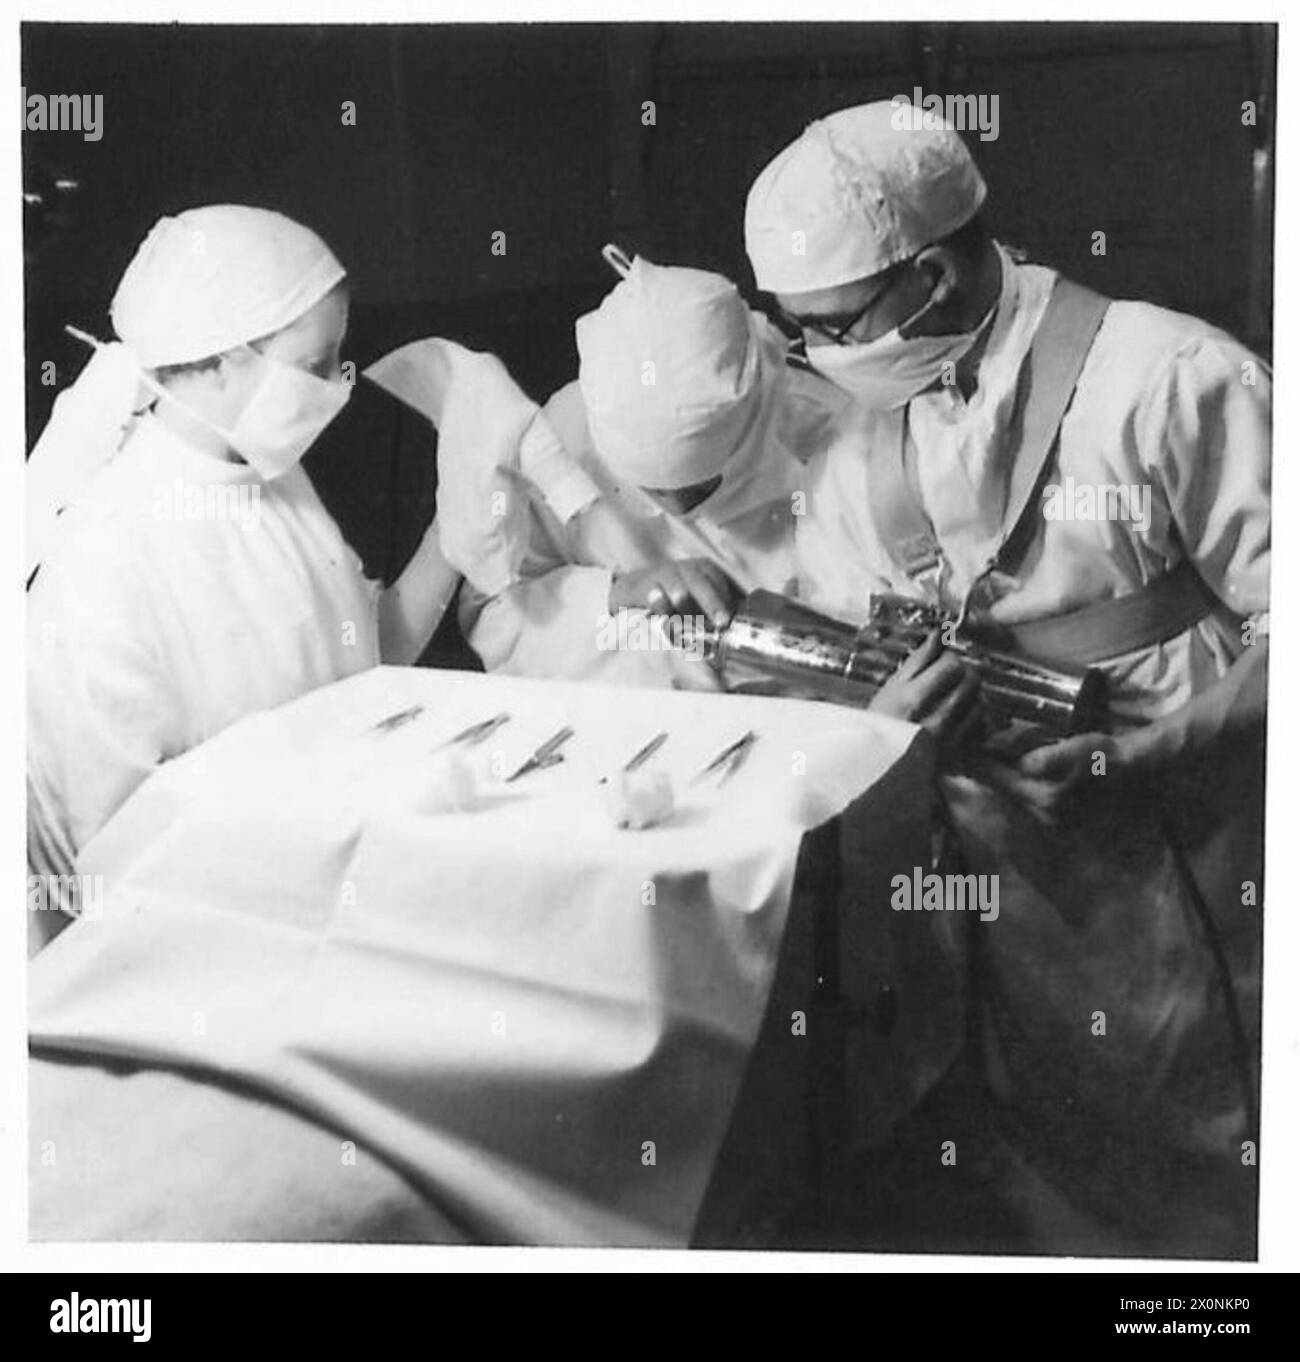 MILITÄRISCHES OPTHALMIC-ZENTRUM - Gewinnung von Stahlkörpern durch Magnet im Operationssaal. Fotografisches negativ, britische Armee Stockfoto